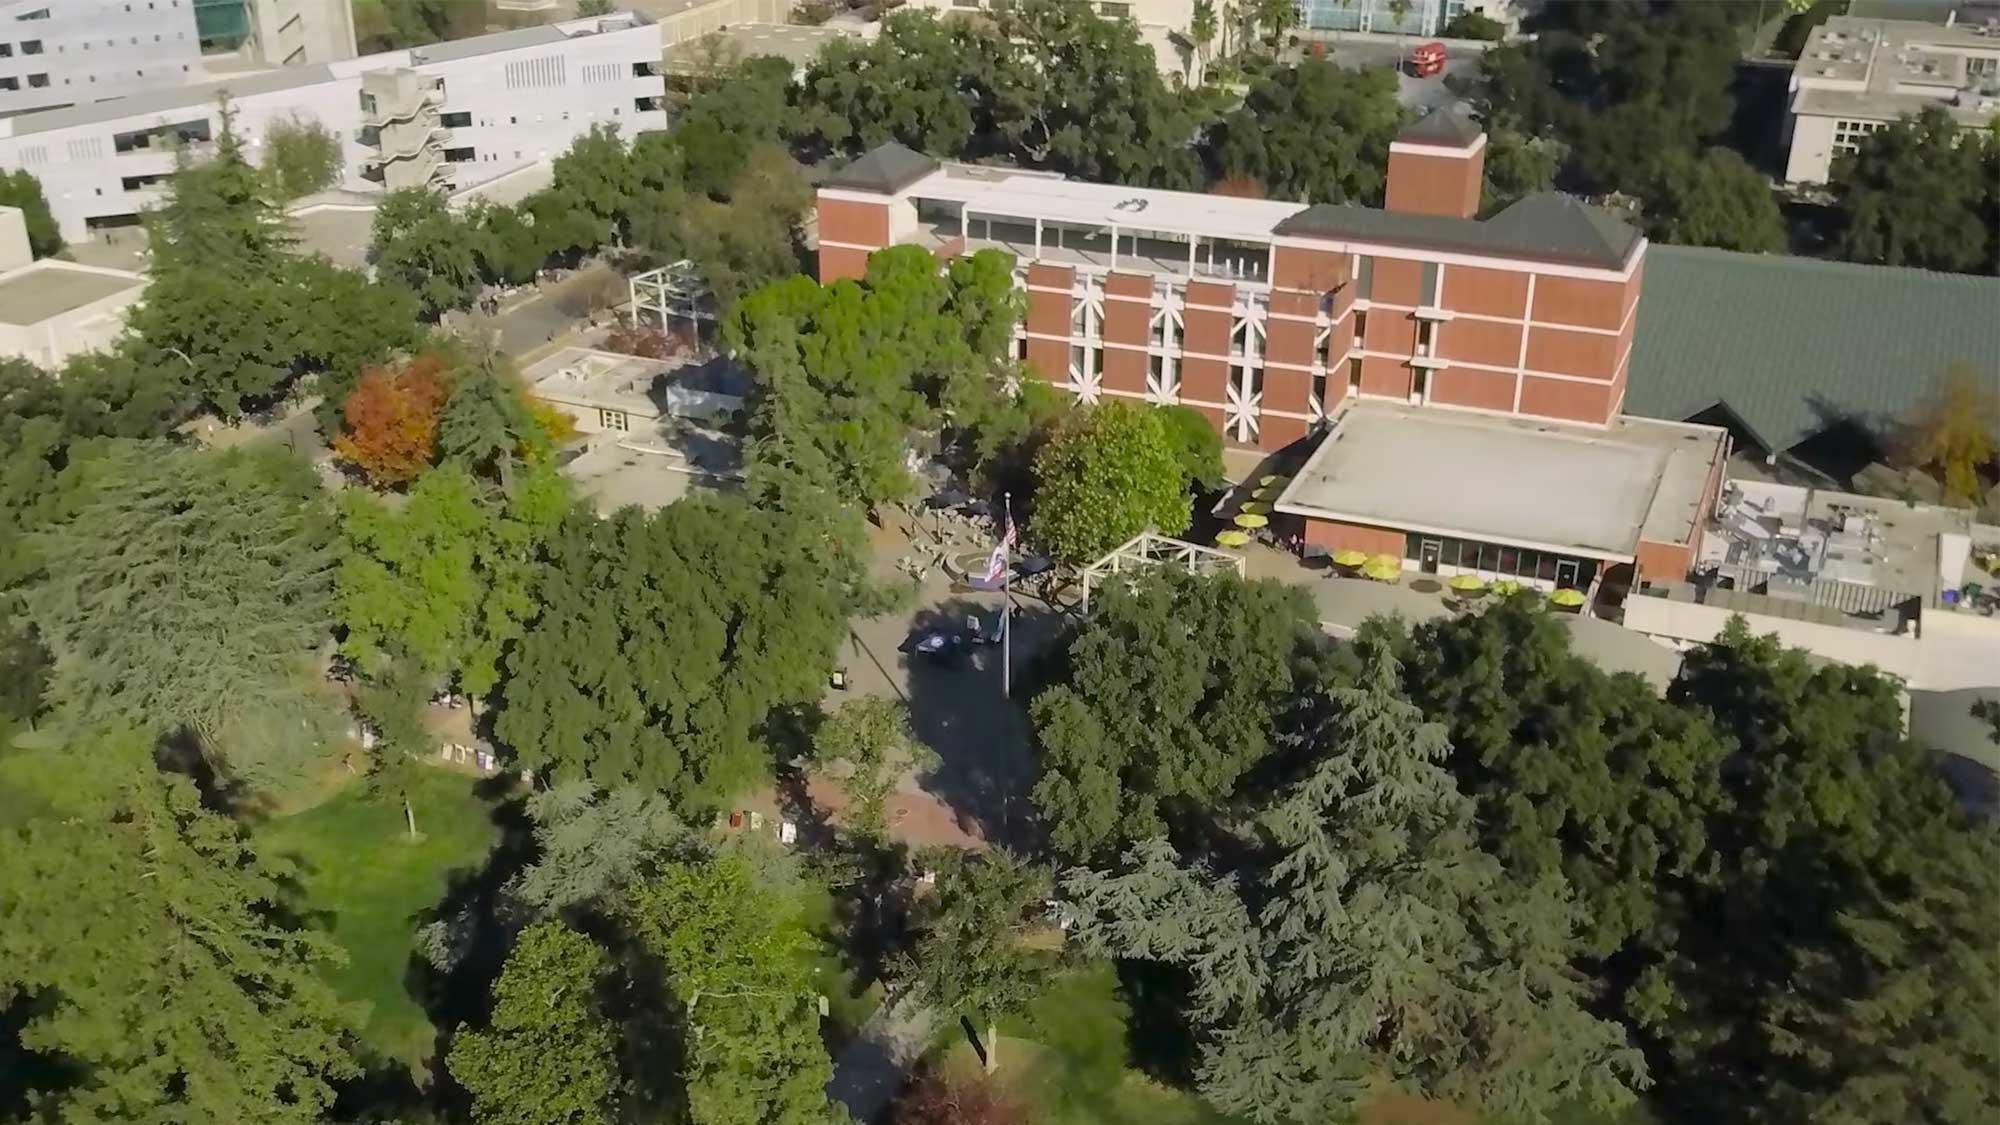 amjs澳金沙门校园鸟瞰图，显示一些被树木包围的建筑物